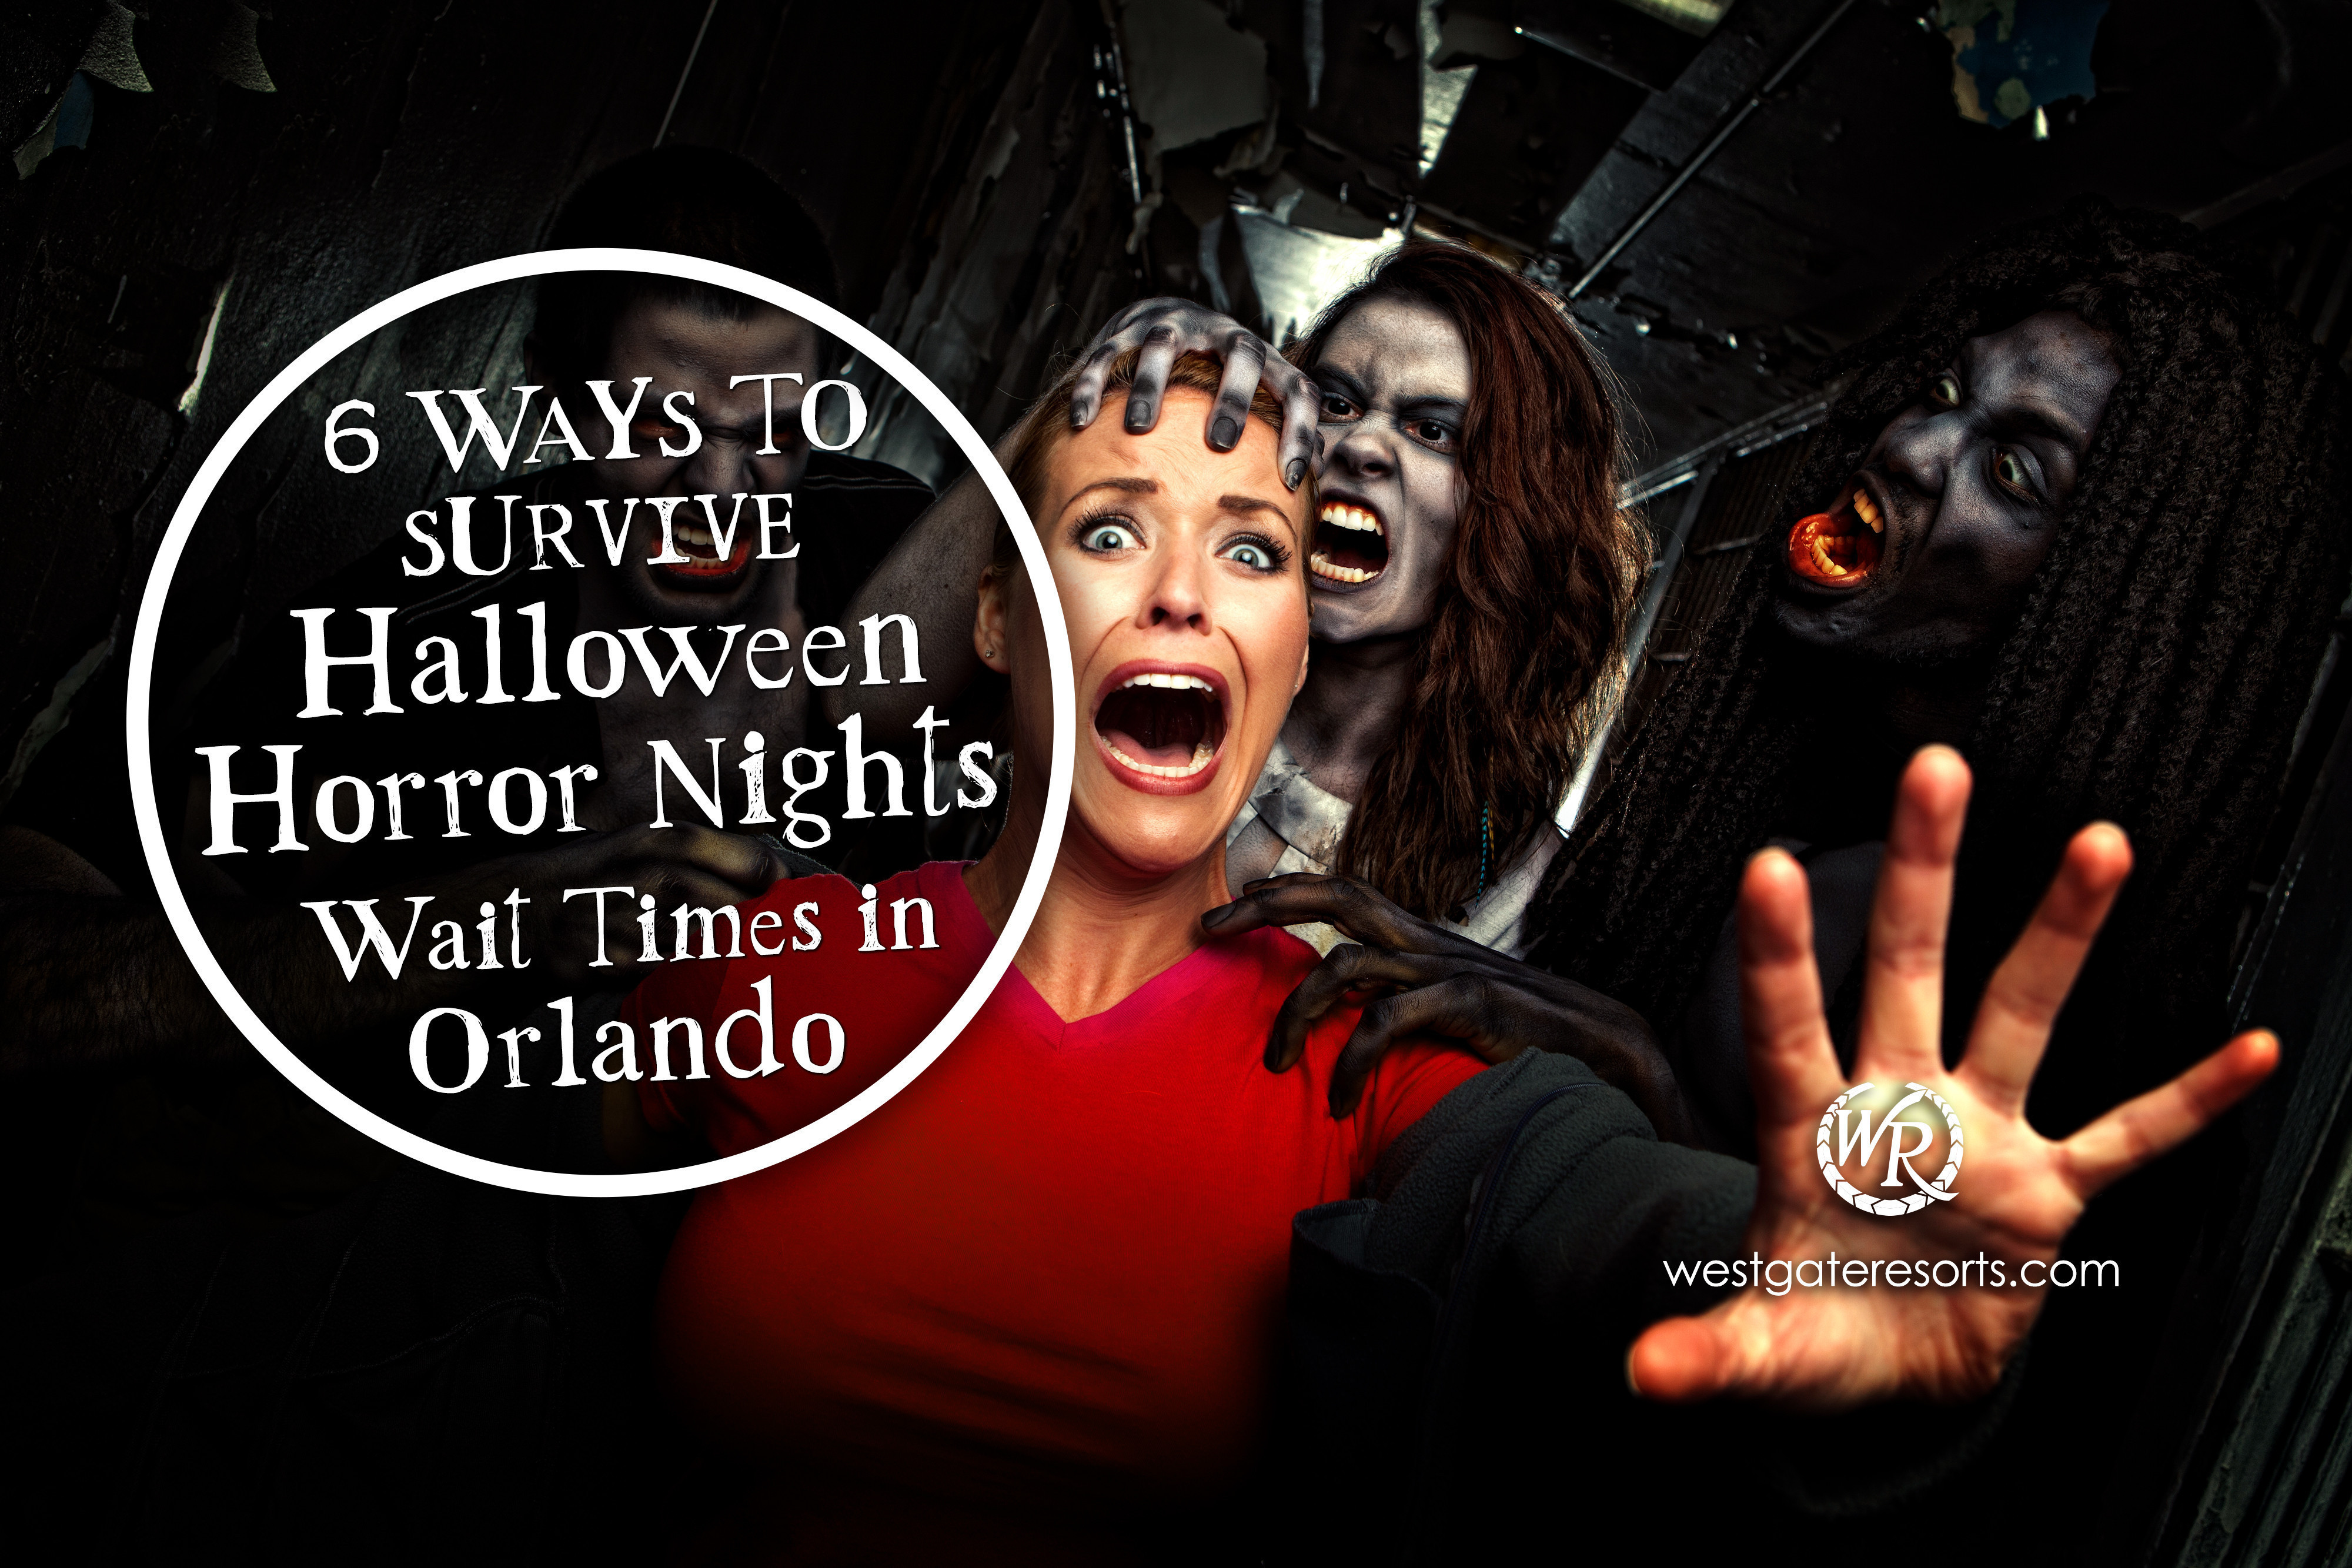 6 Ways to Survive Halloween Horror Nights Wait Times in Orlando